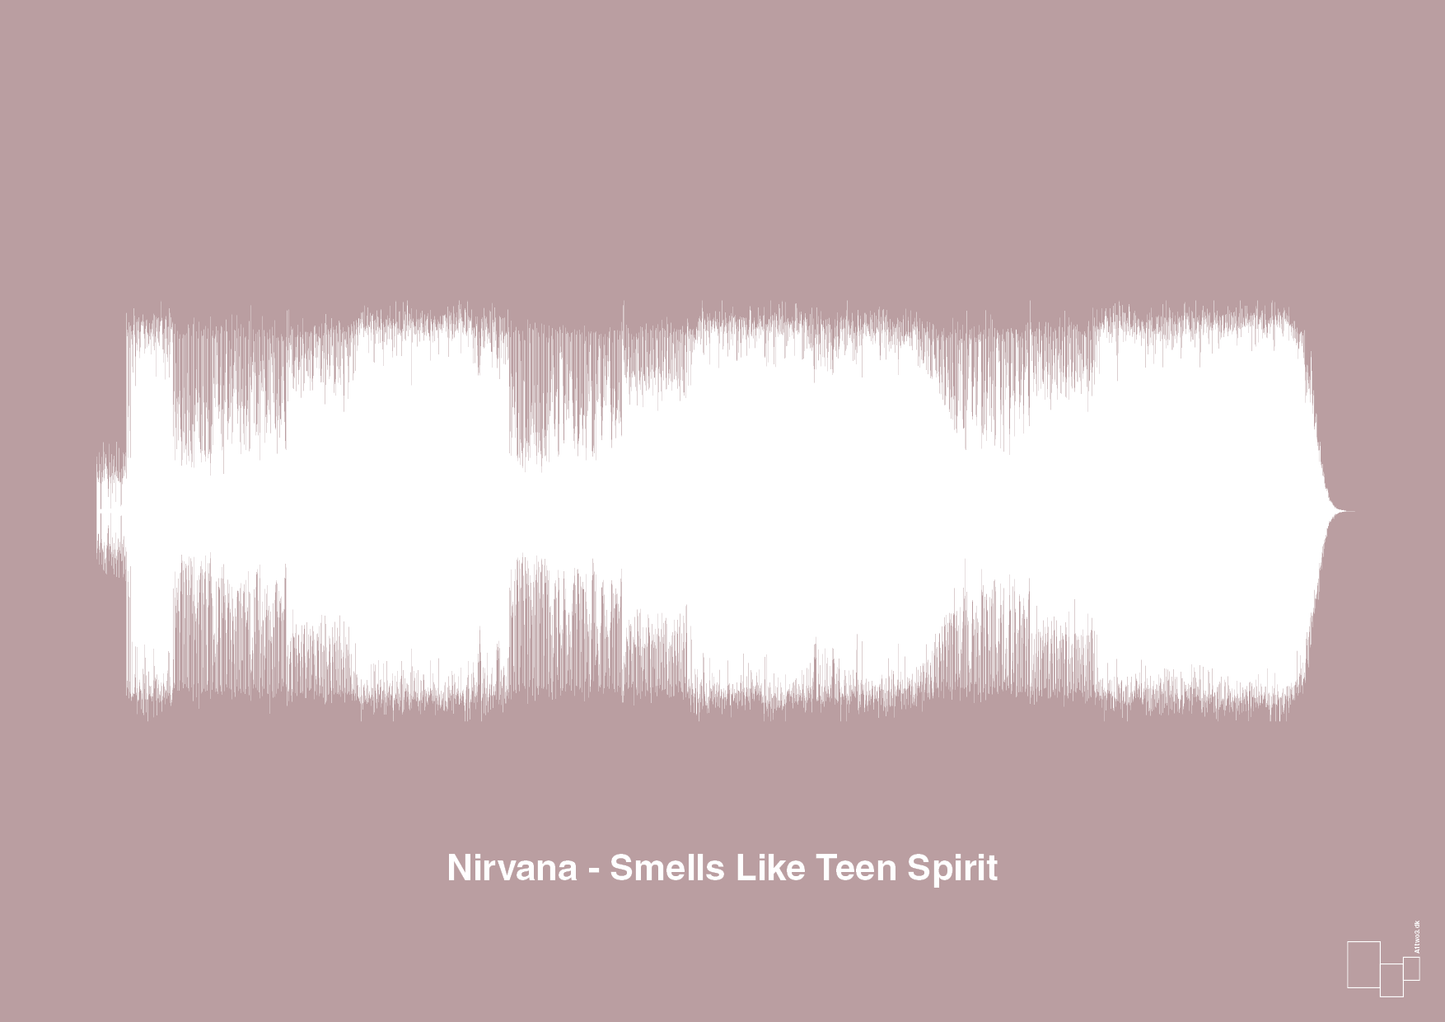 nirvana - smells like teen spirit - Plakat med Musik i Light Rose